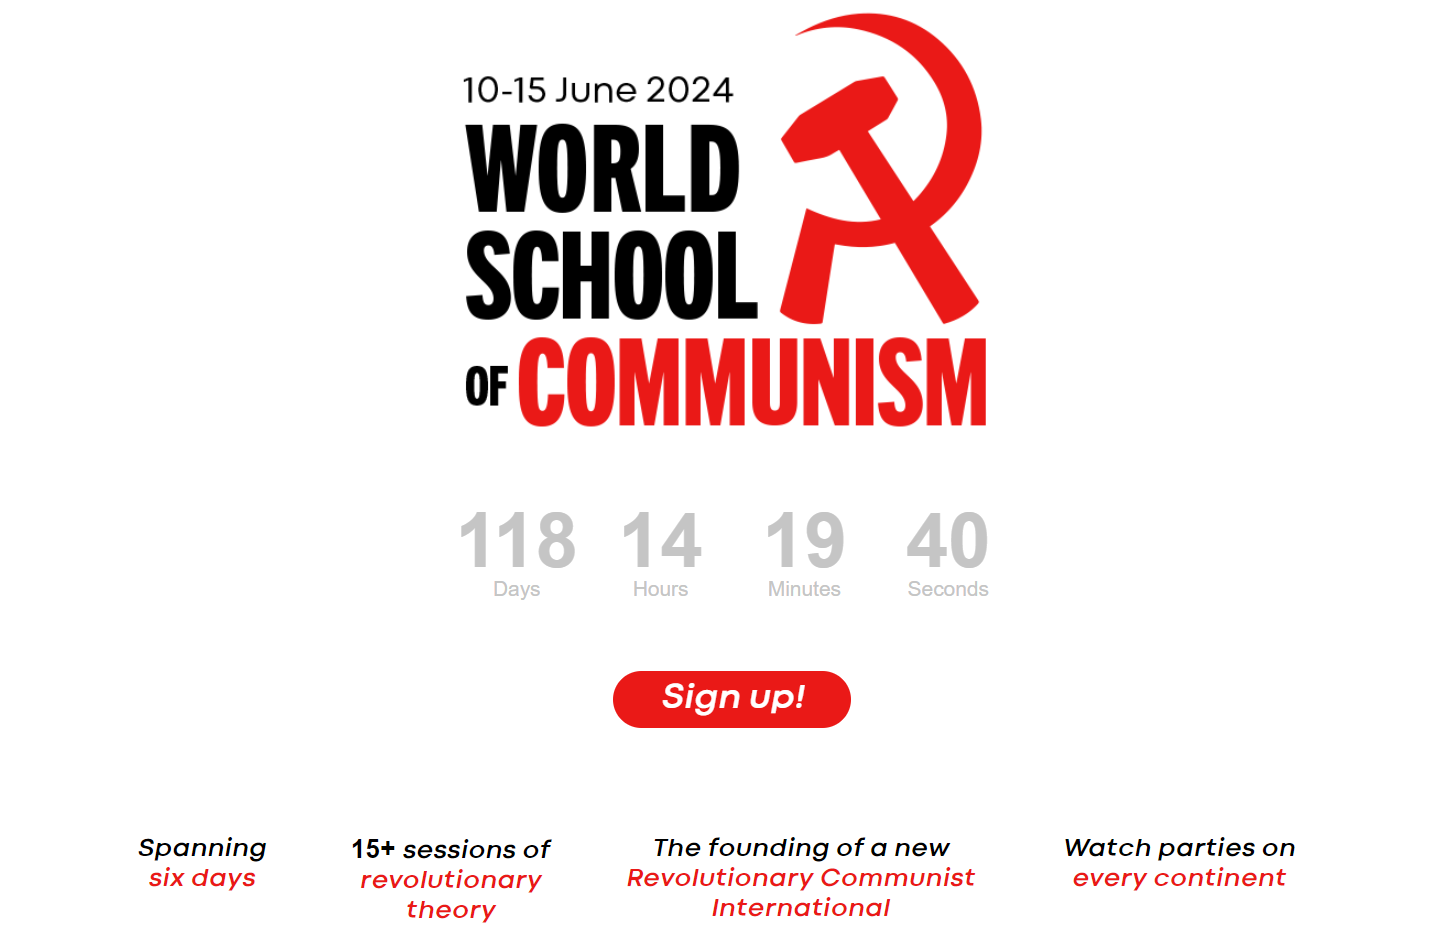 school of communism